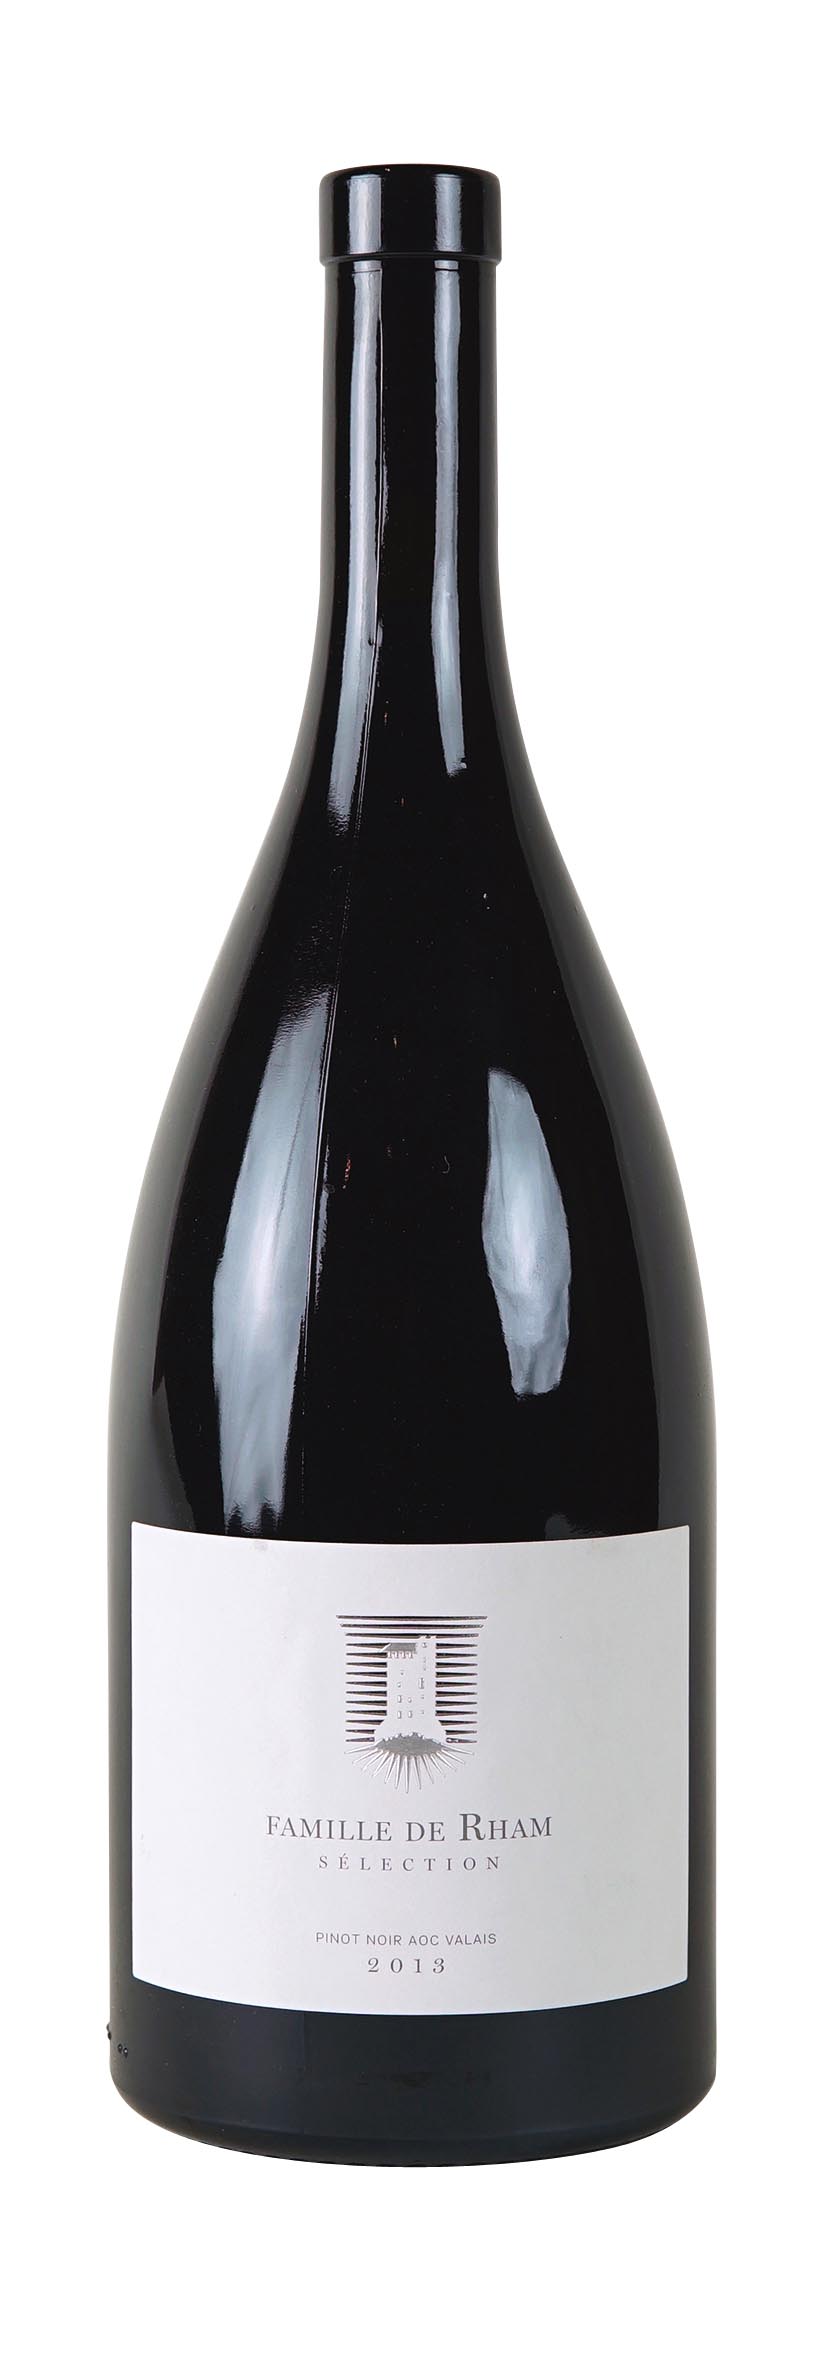 Valais AOC Pinot Noir Sélection Famille de Rham 2013